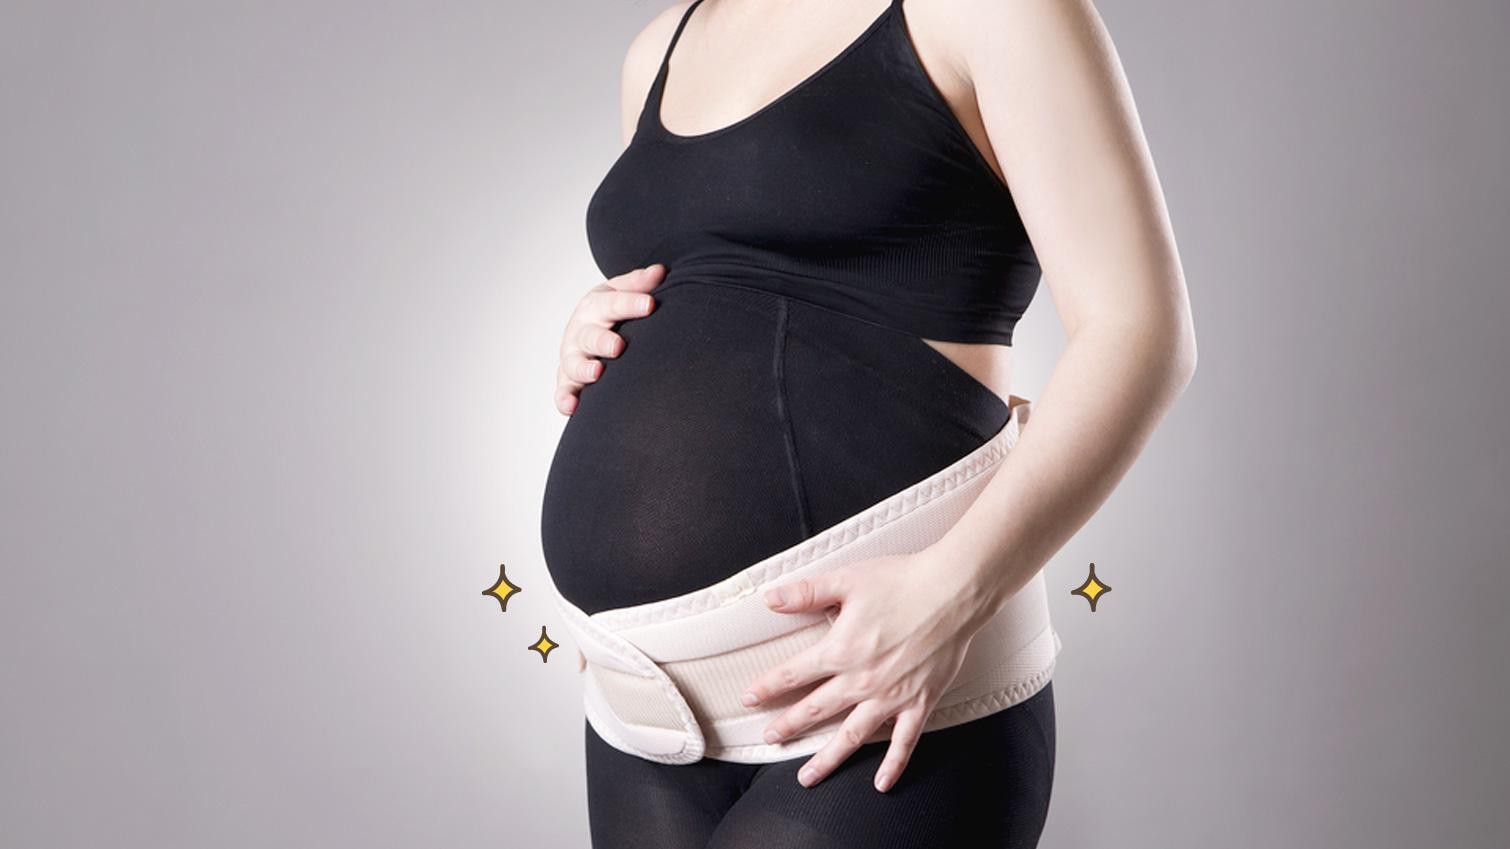 Manfaat Maternity Belt Saat Hamil Trimester Kedua, Perhatikan Juga Cara Pakainya